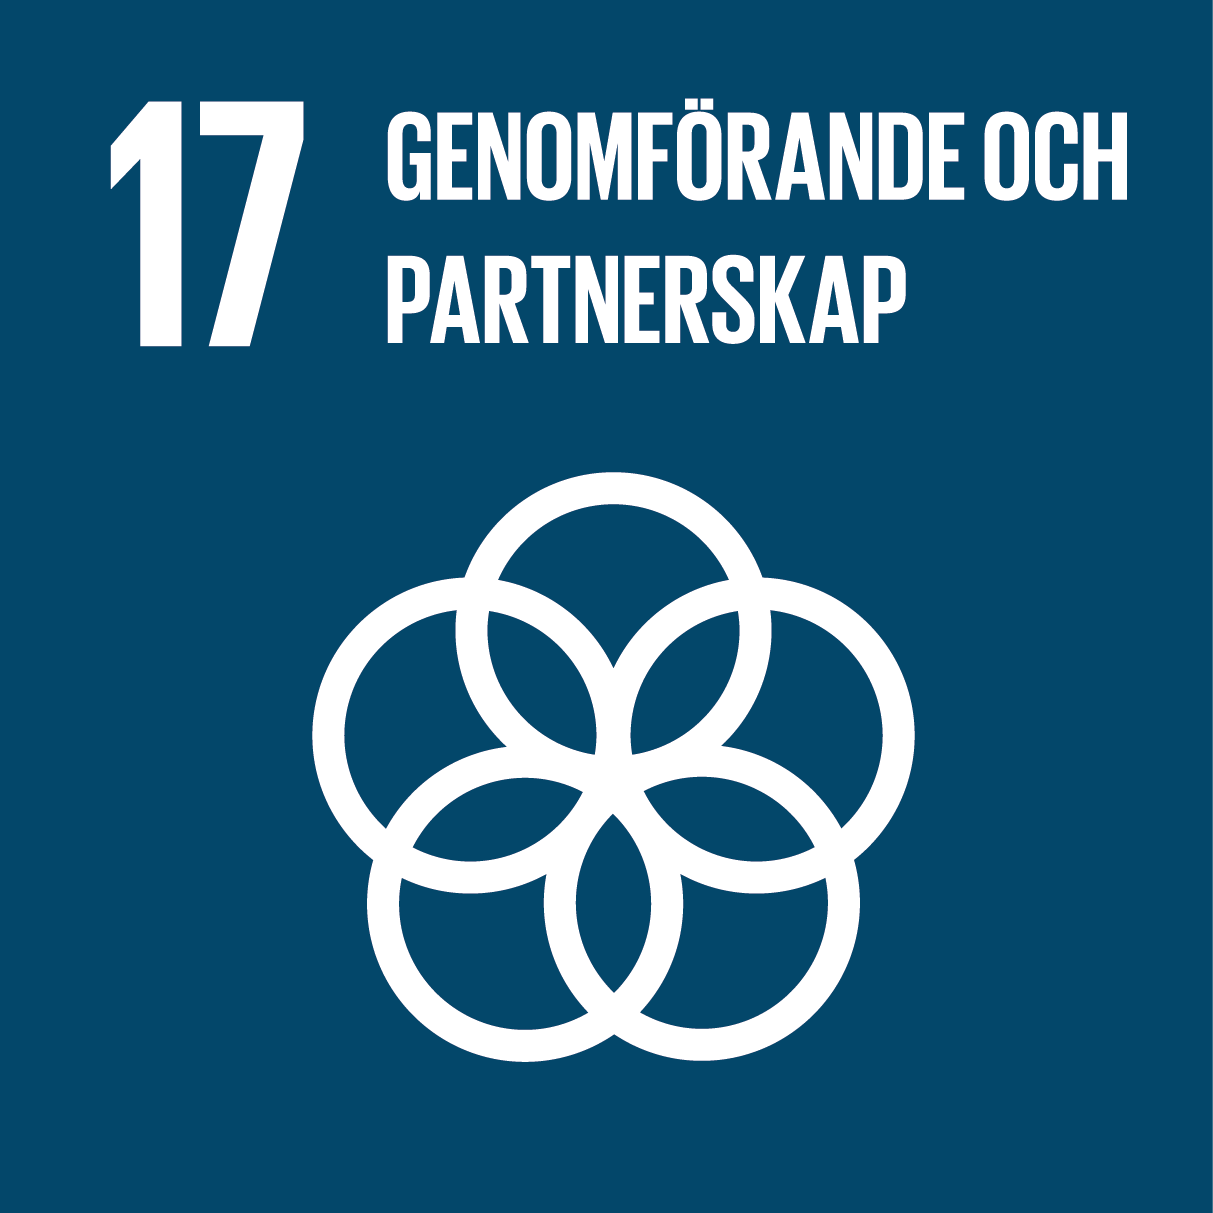 Globala målen - ikon för mål 17: Genomförande och partnerskap